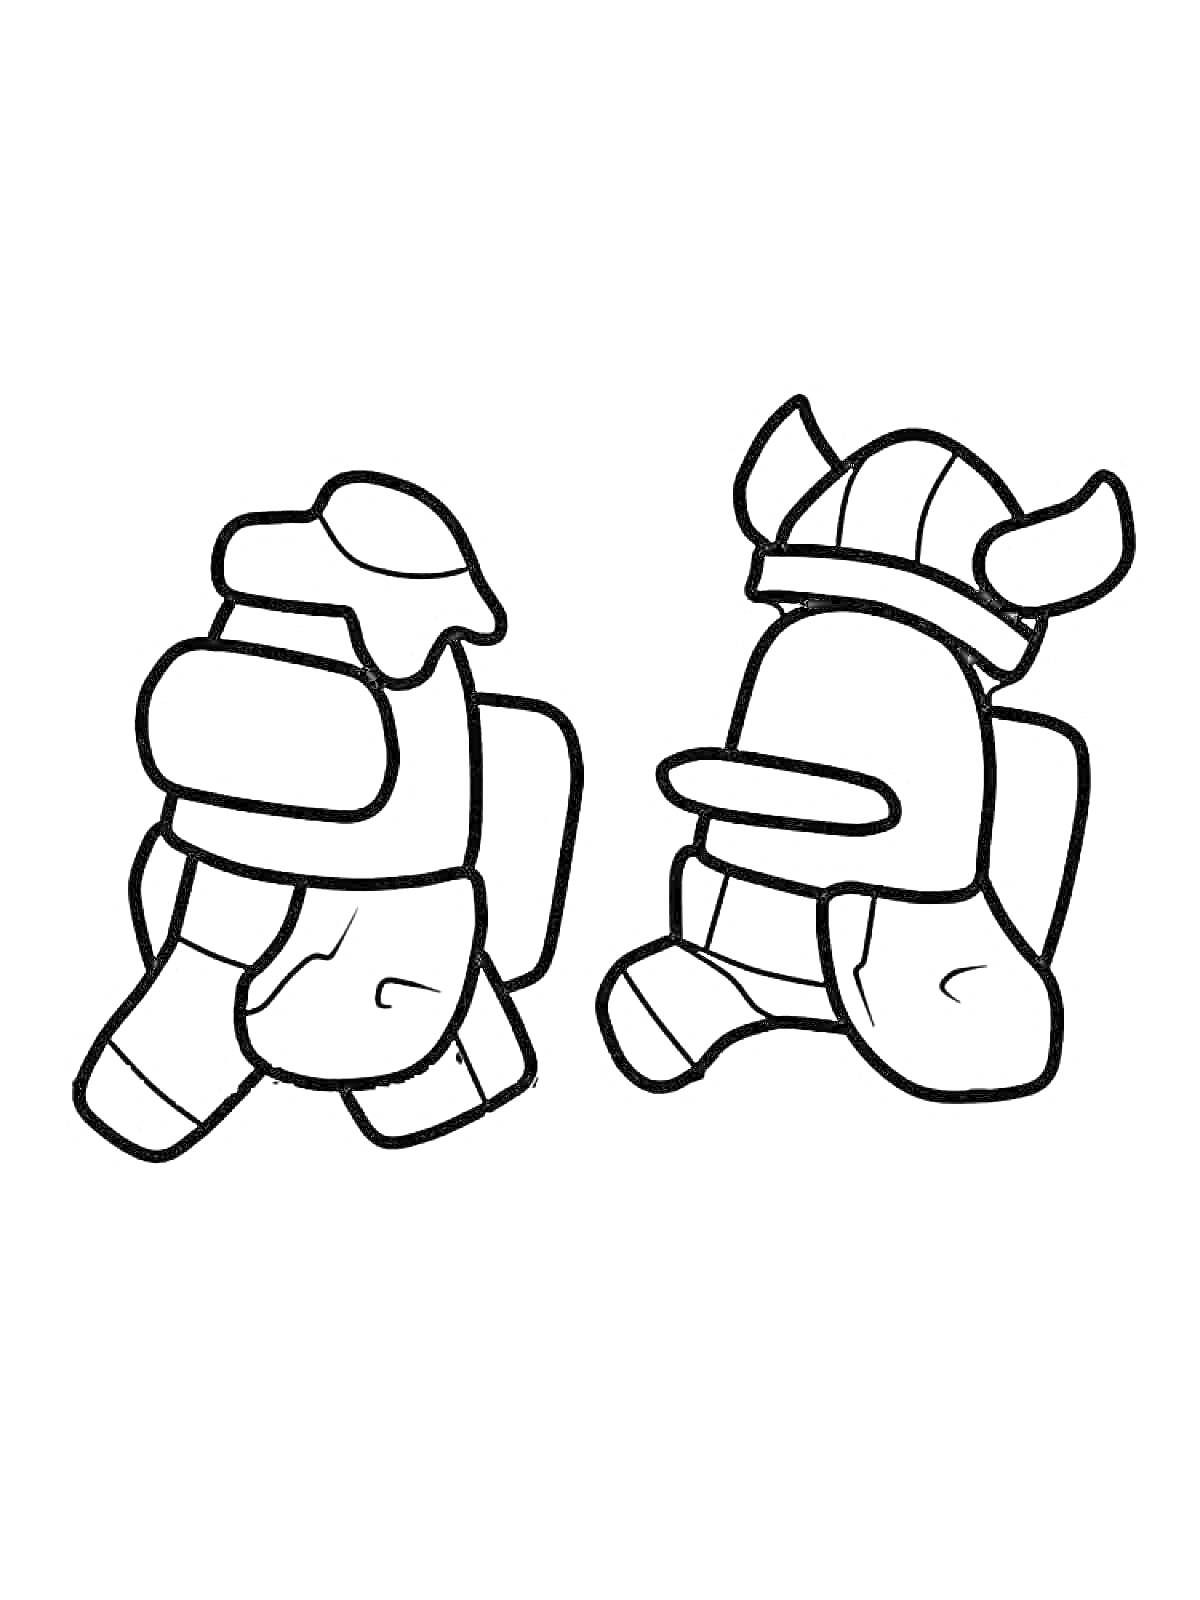 Два персонажа из игры Амонг Ас, один в шляпе и другой в шлеме викинга